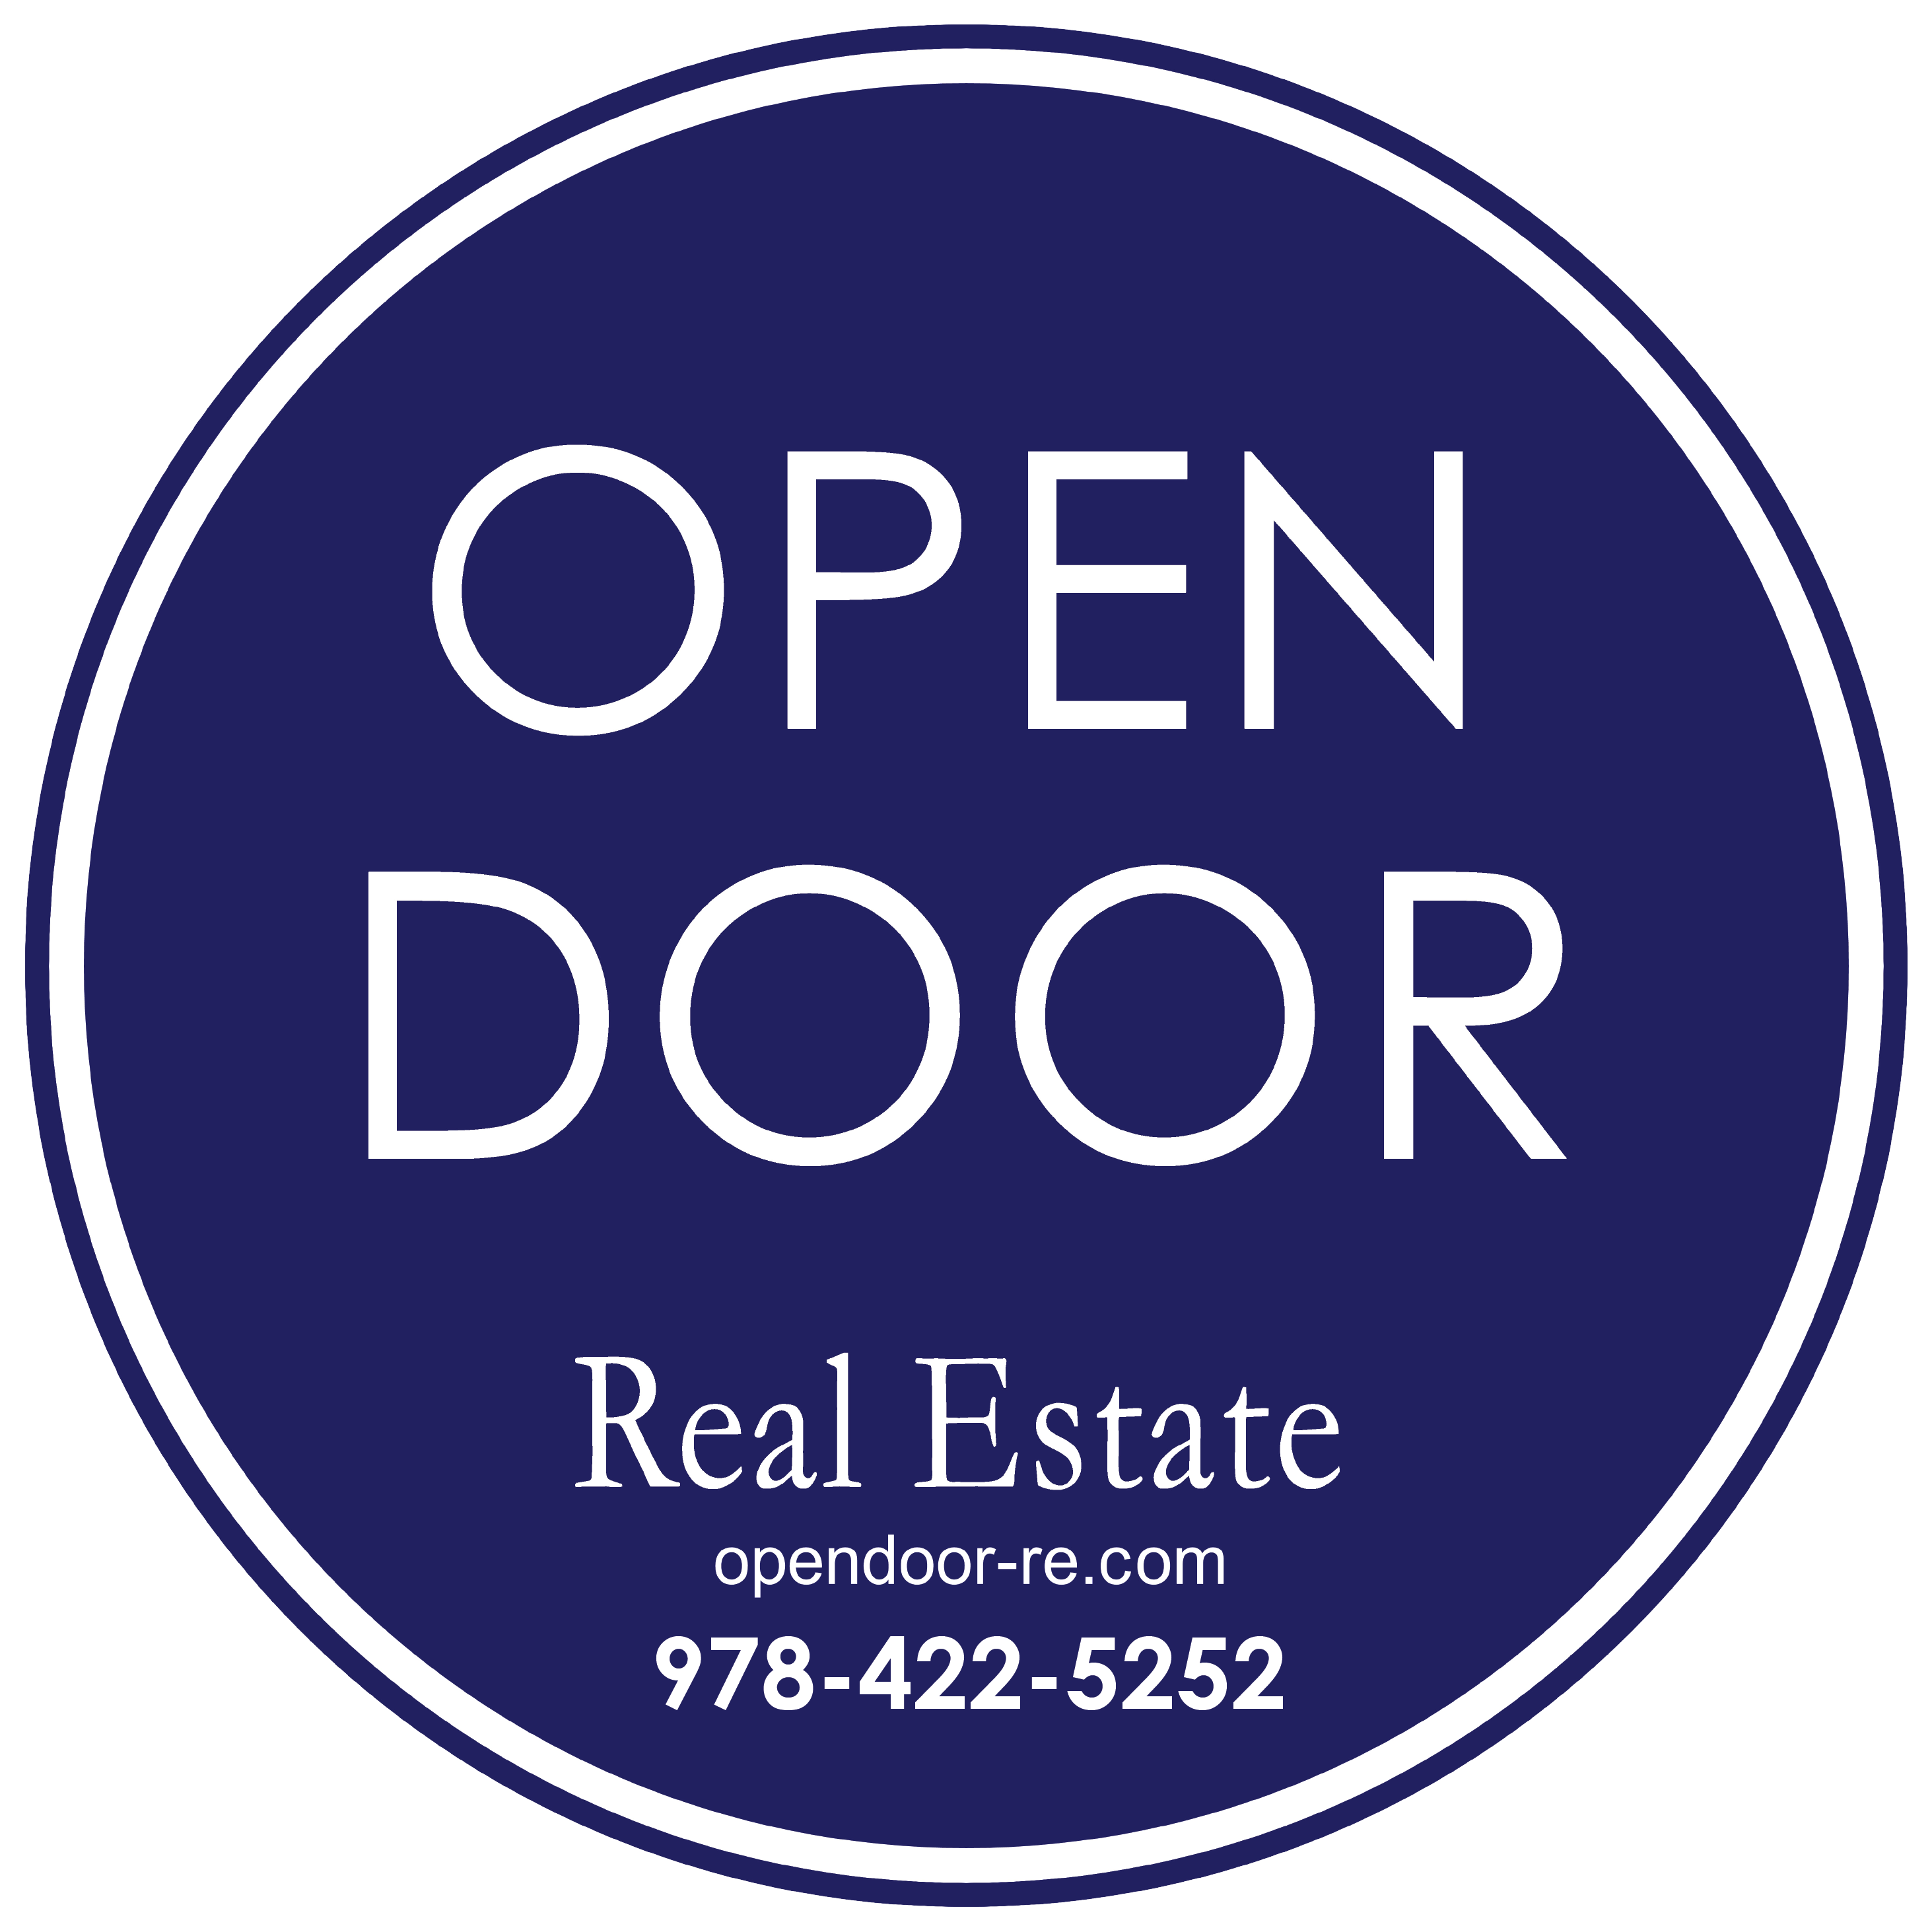 OPEN DOOR Real Estate